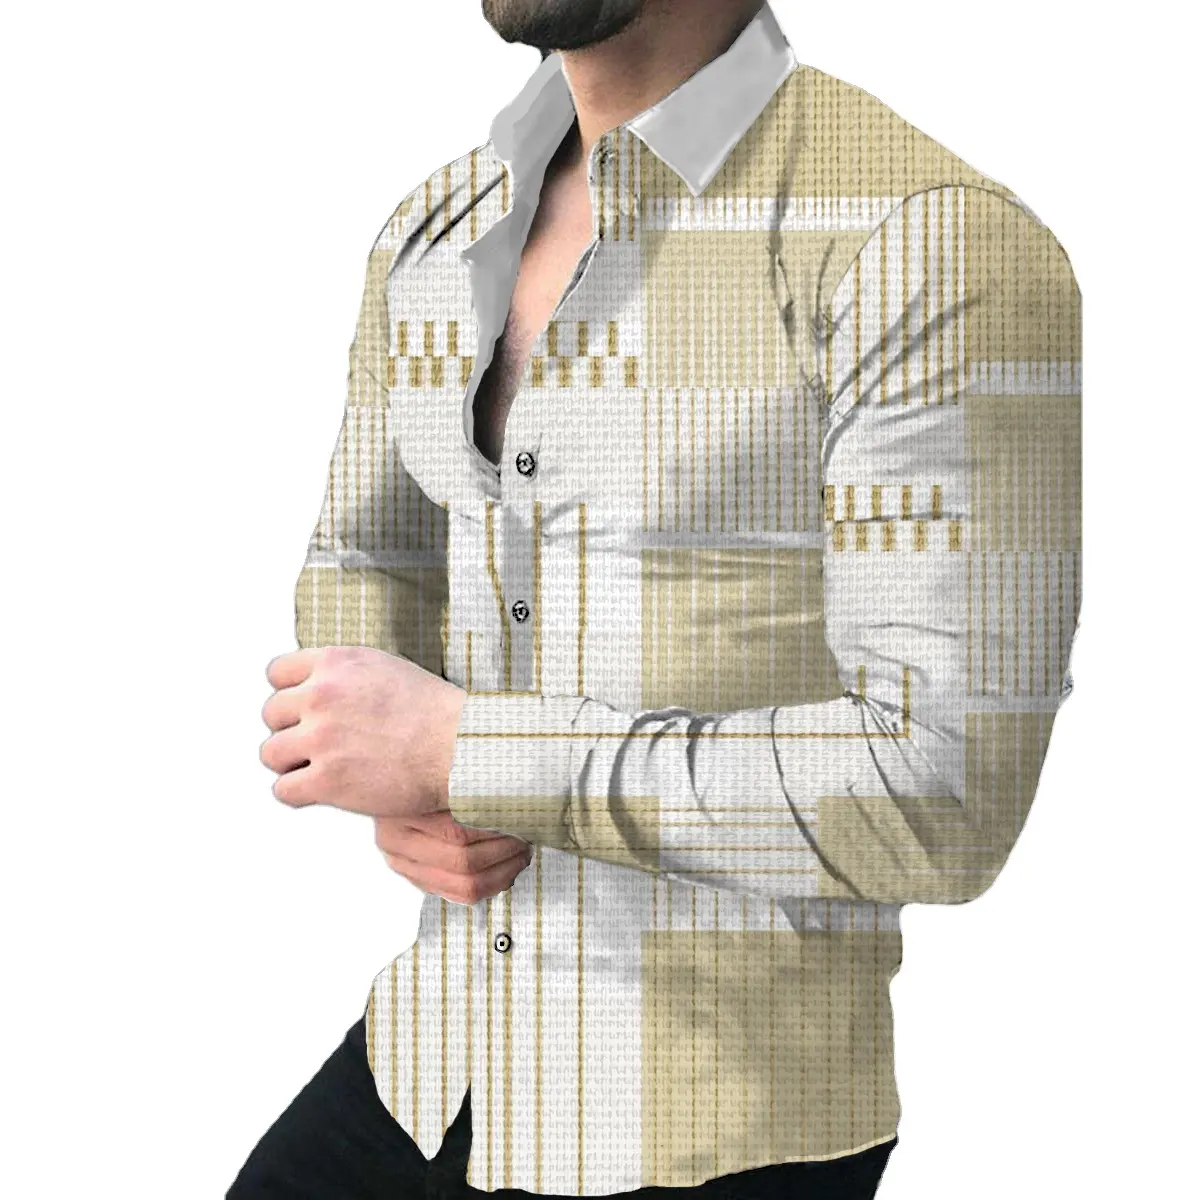 Designer Modelos de As Últimas Camisas Impresso para Homens Confortável Slim Fit Camisa